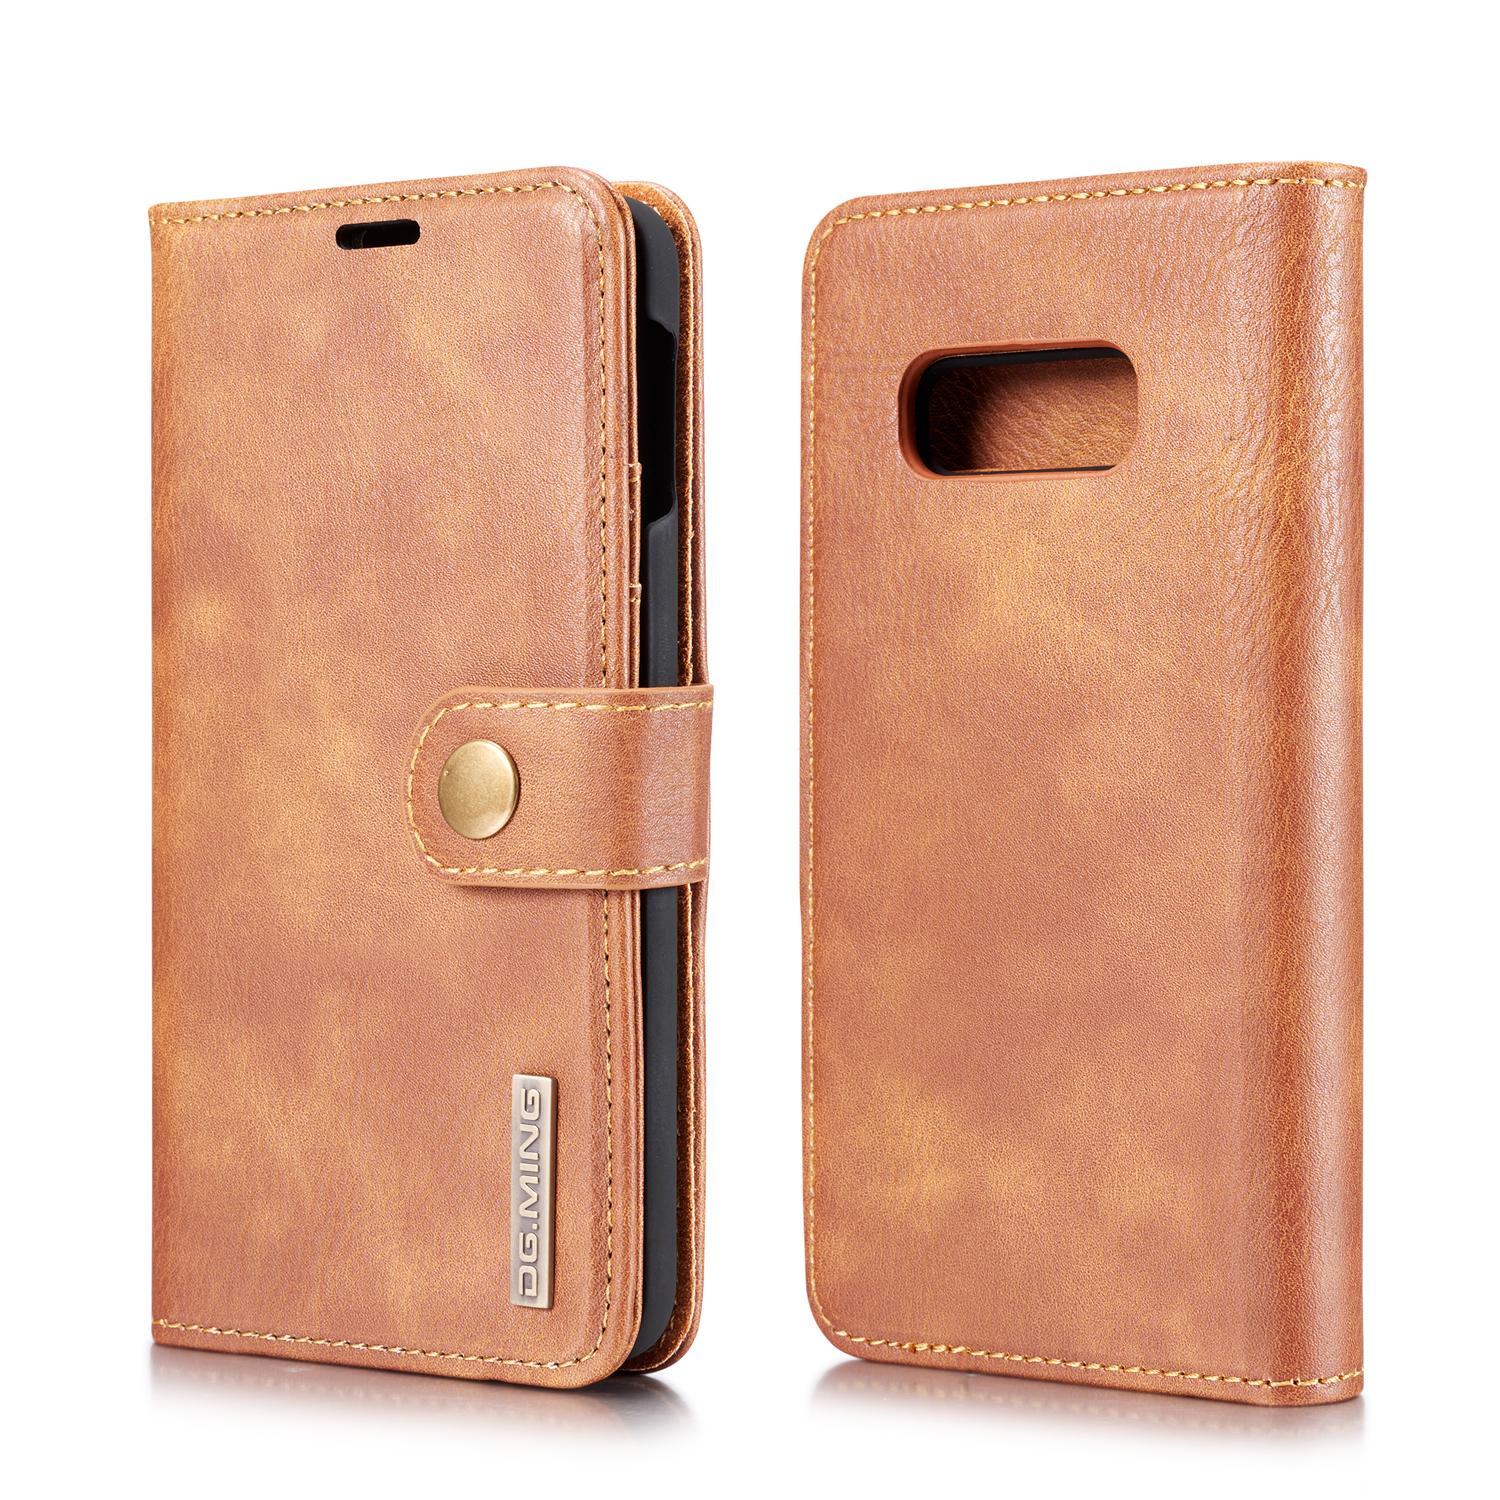 Samsung Galaxy S10e Plånboksfodral med avtagbart skal, cognac